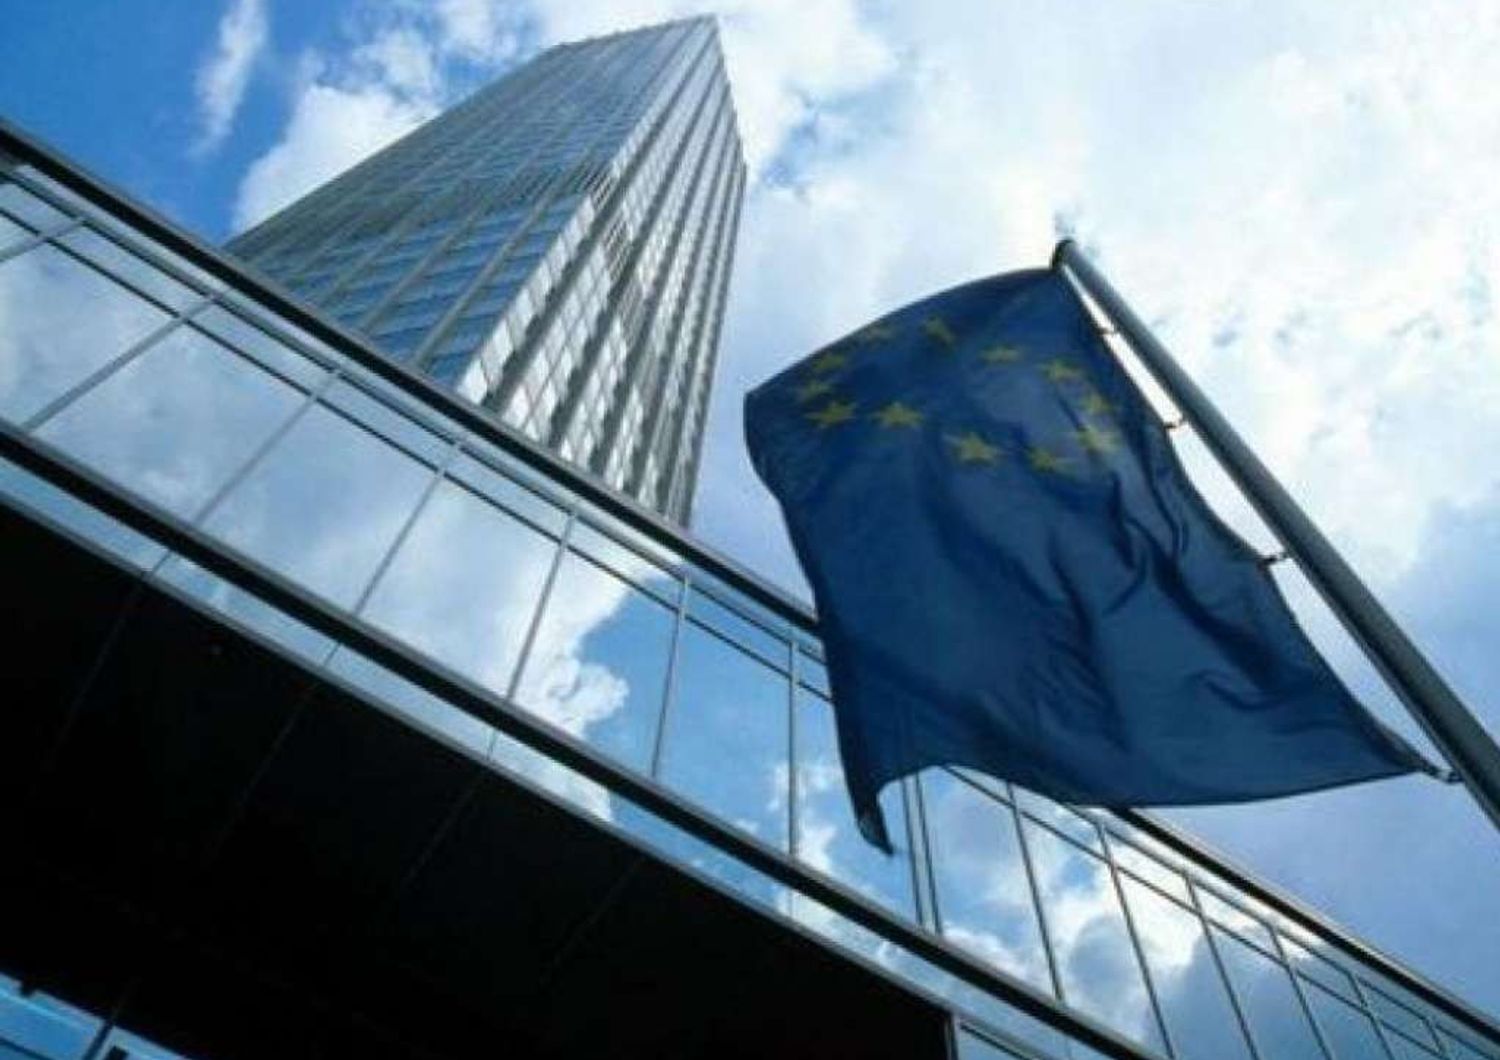 Bce: Italia rispetti Patto Stabilita'. E' cruciale attuare le riforme